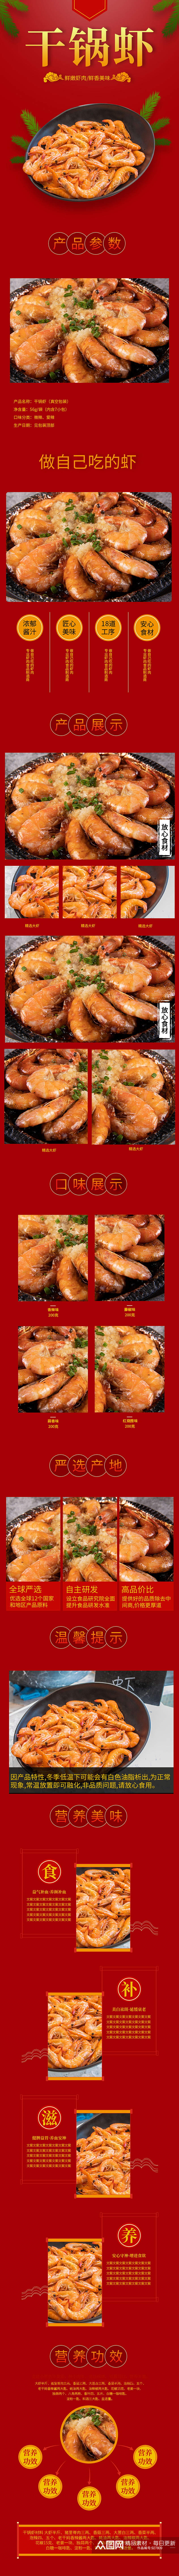 食品干锅虾虾仁海鲜中餐肉类详情素材